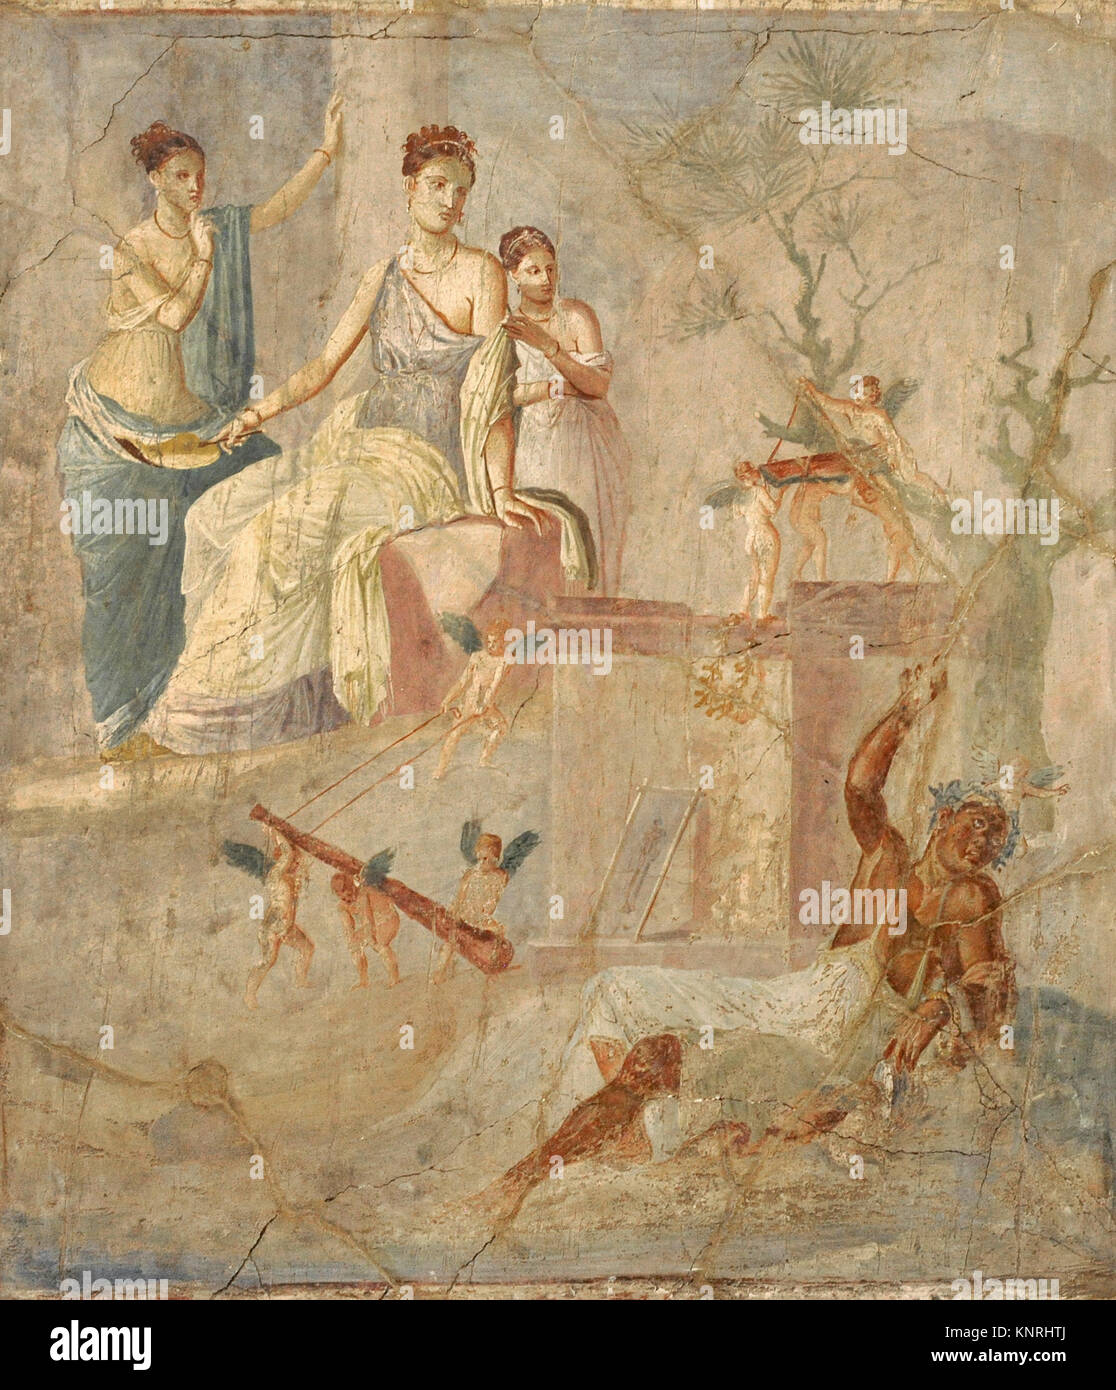 Römischen Fresko und Omphale Heracle. 1-79 AD. Dritten pompejanischen Stil. Pompeji. Nationalen Archäologischen Museum. Neapel. Italien. Stockfoto